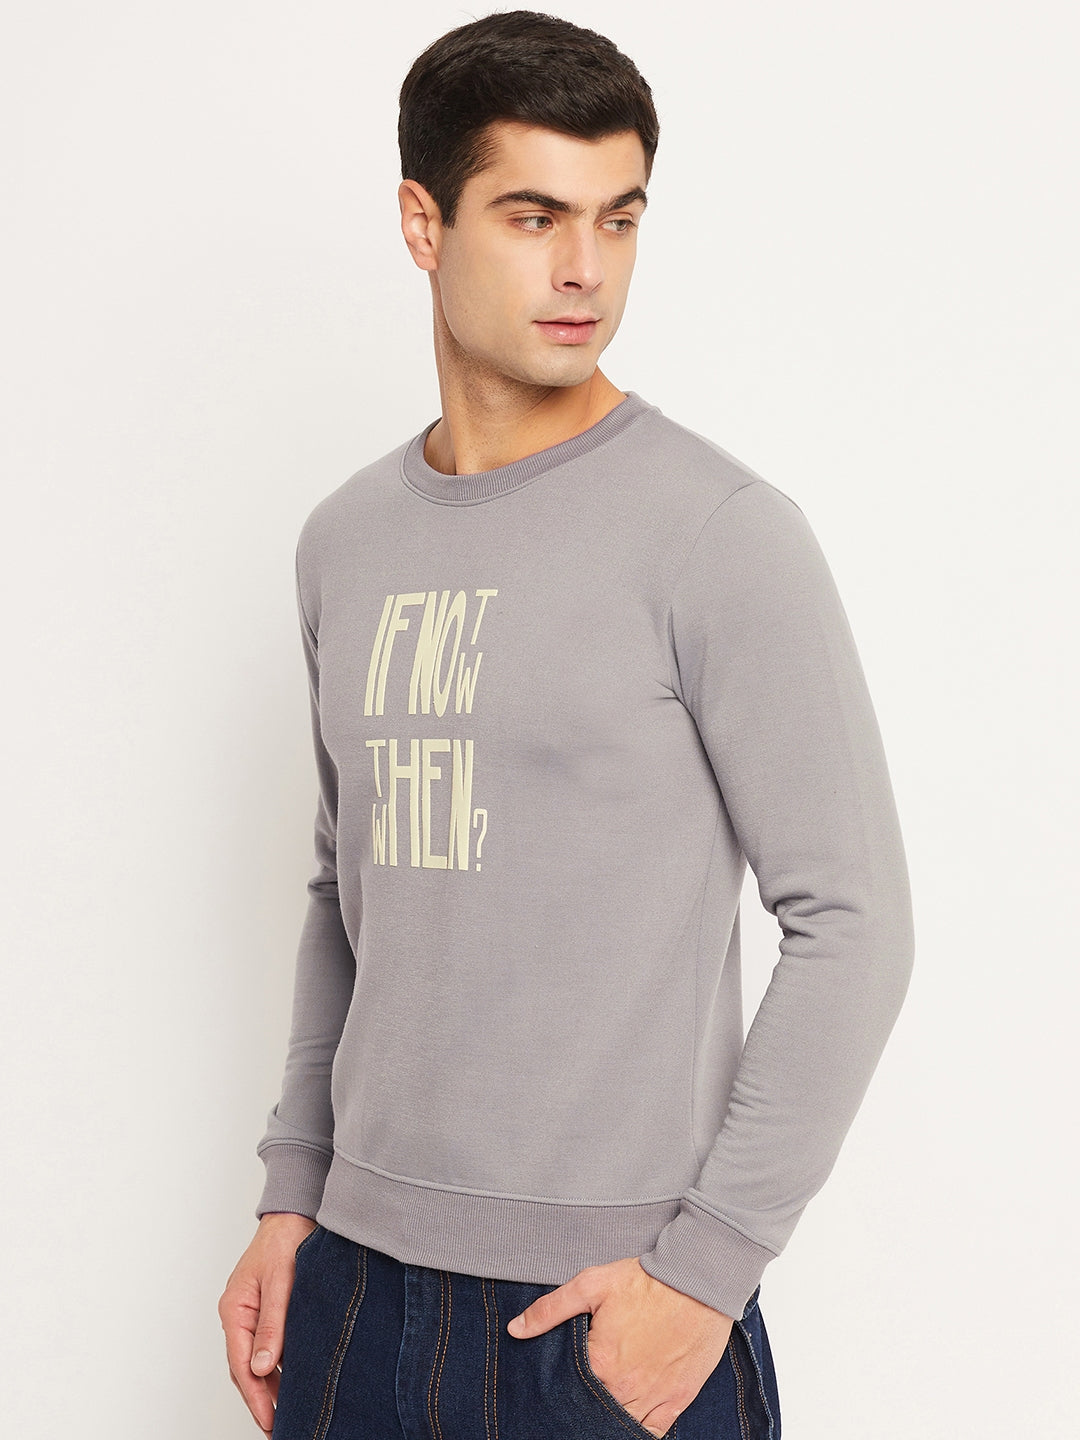 Men's Sweatshirt Grey